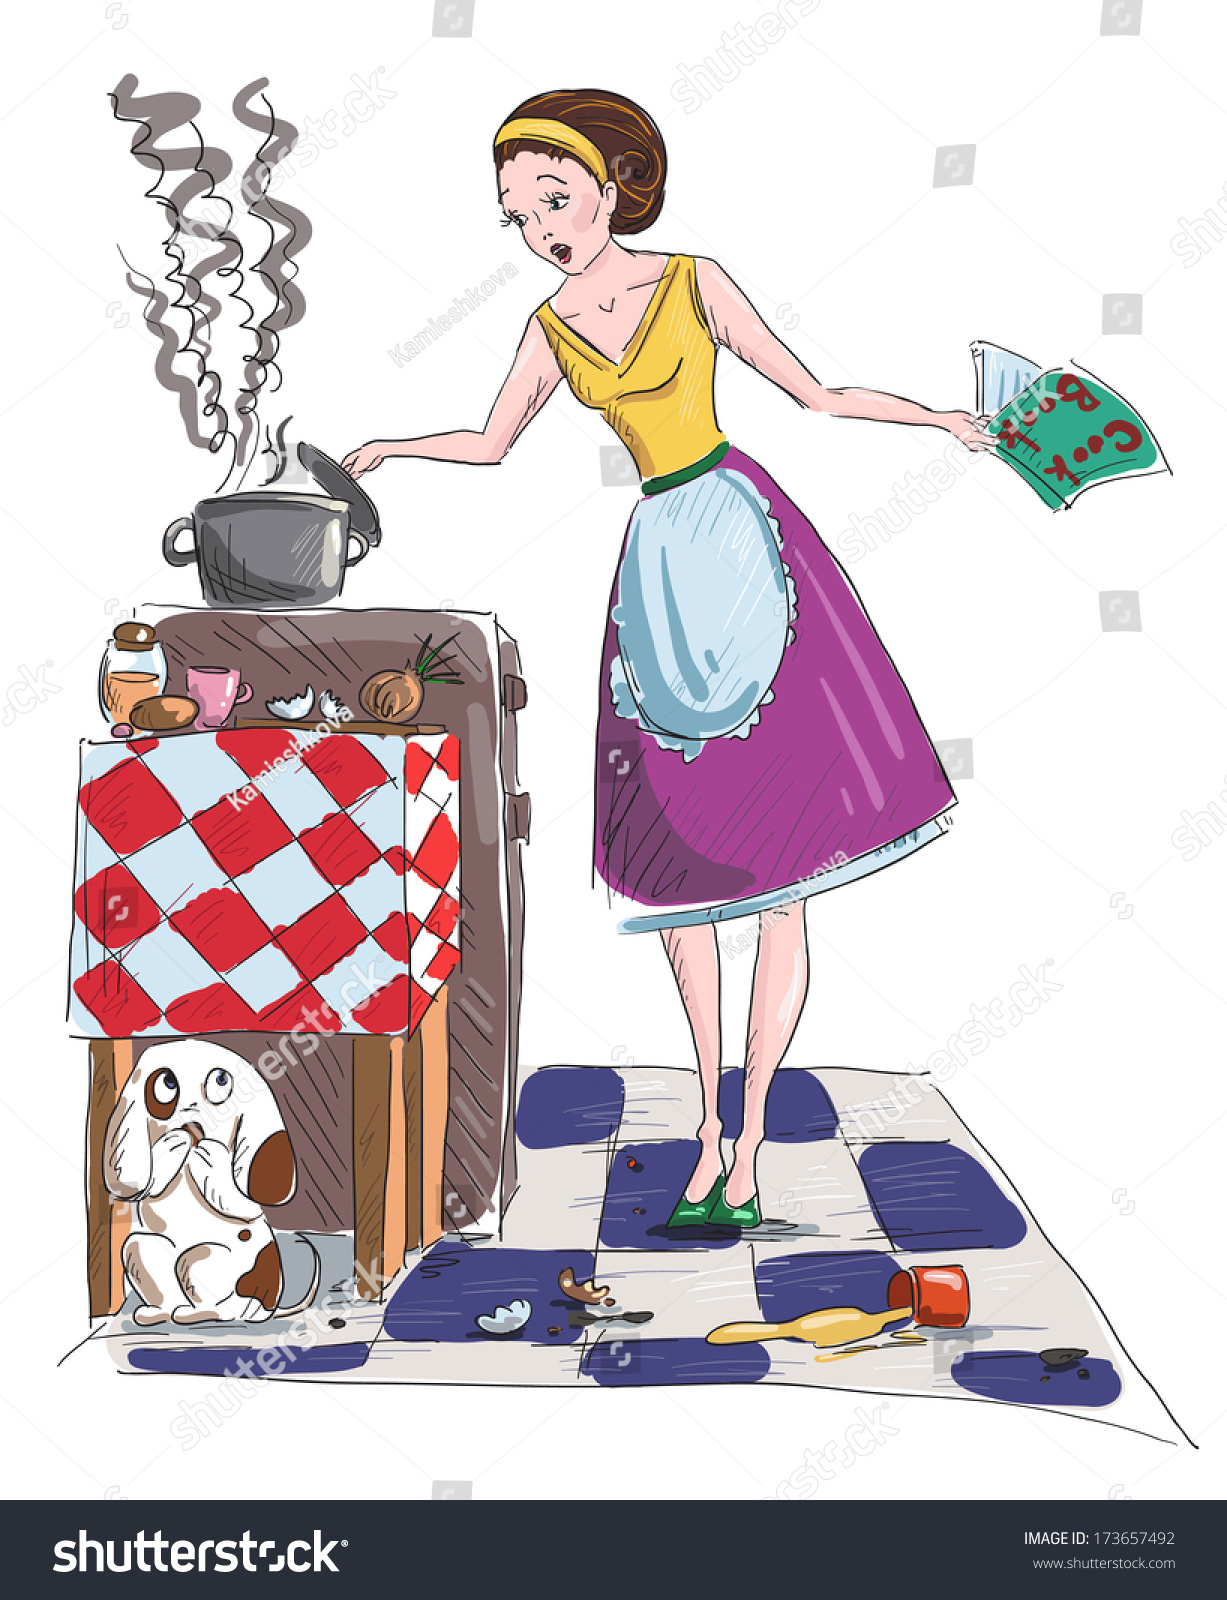 Housewife Cartoon Illustration Stock Illustration 173657492 - Shutterstock